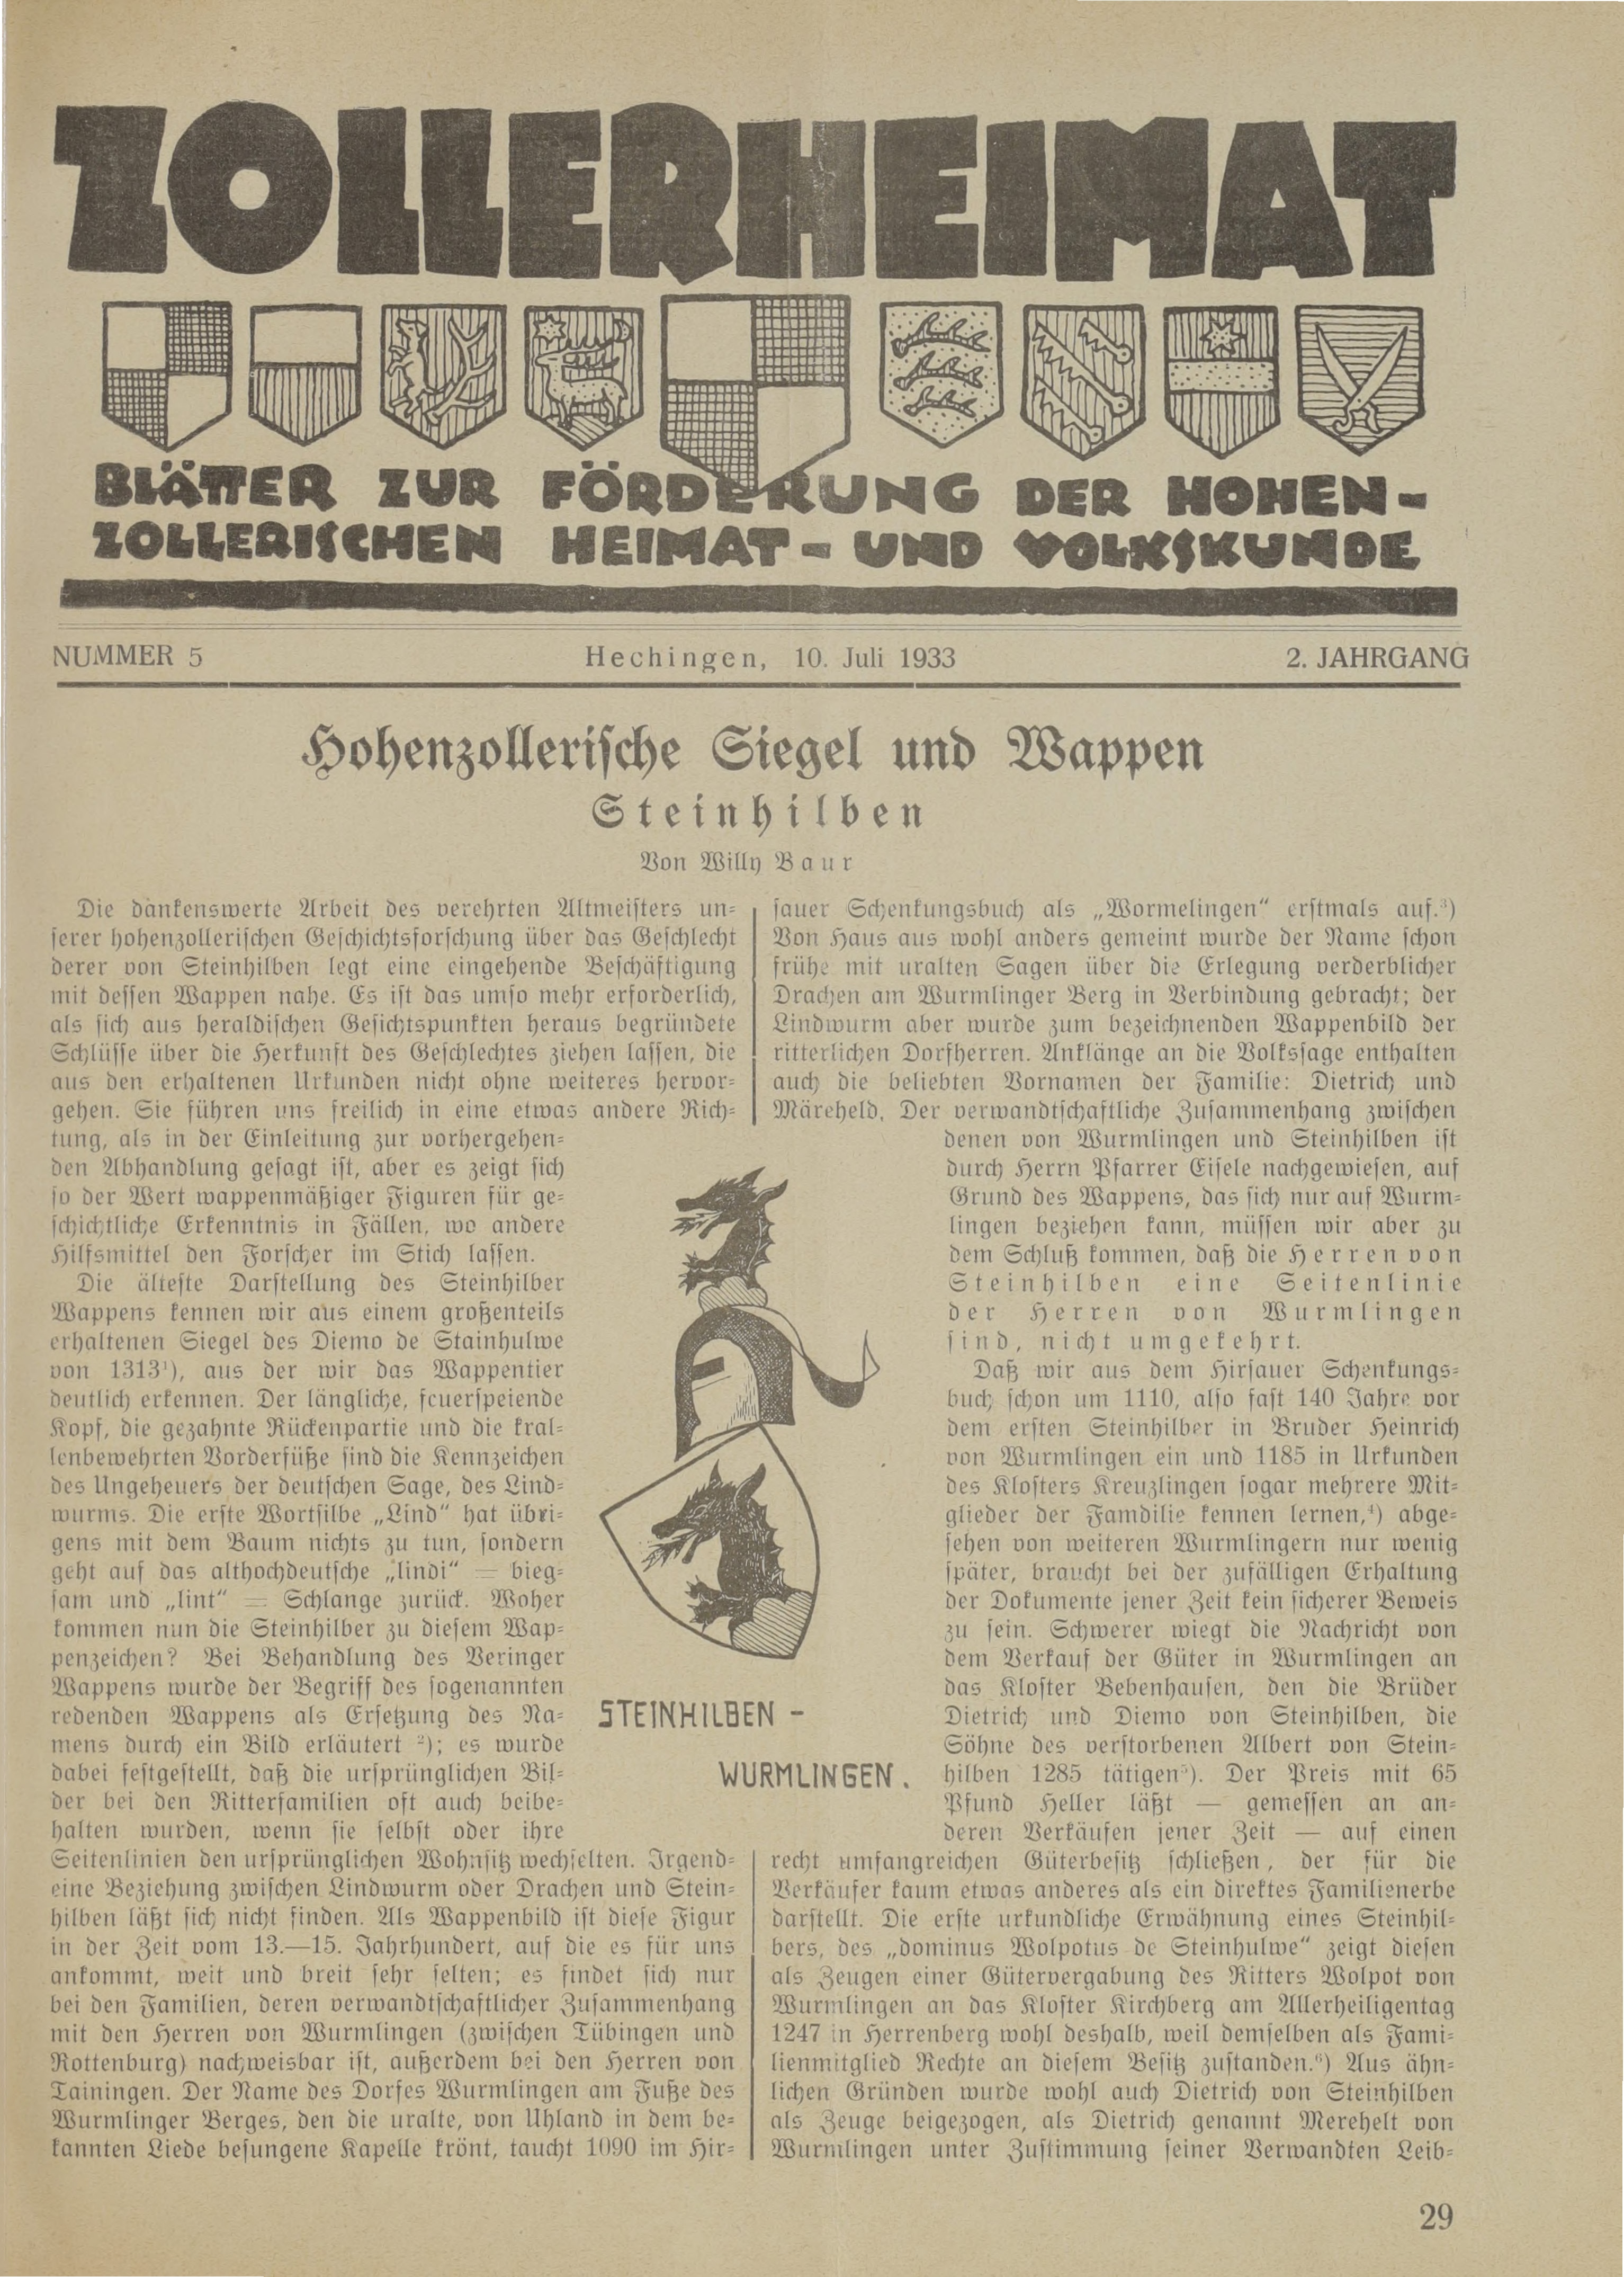                     Ansehen Bd. 2 Nr. 5 (1933): Zollerheimat
                